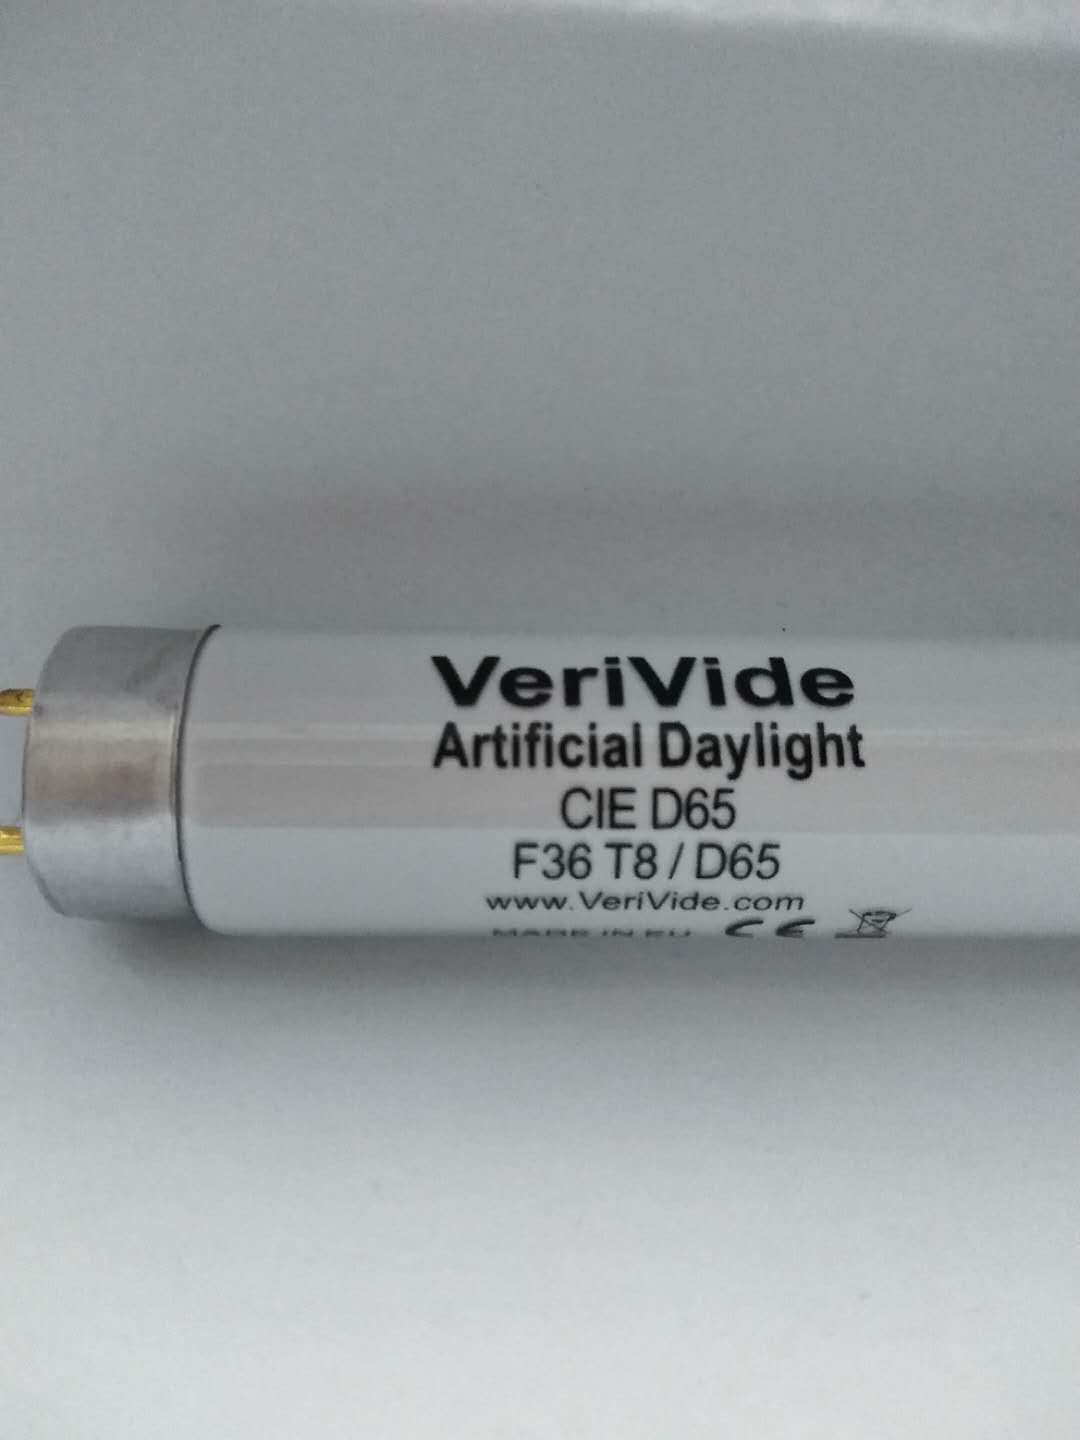 VeriVide Artificial Daylight CIE D65 F36T8/D65